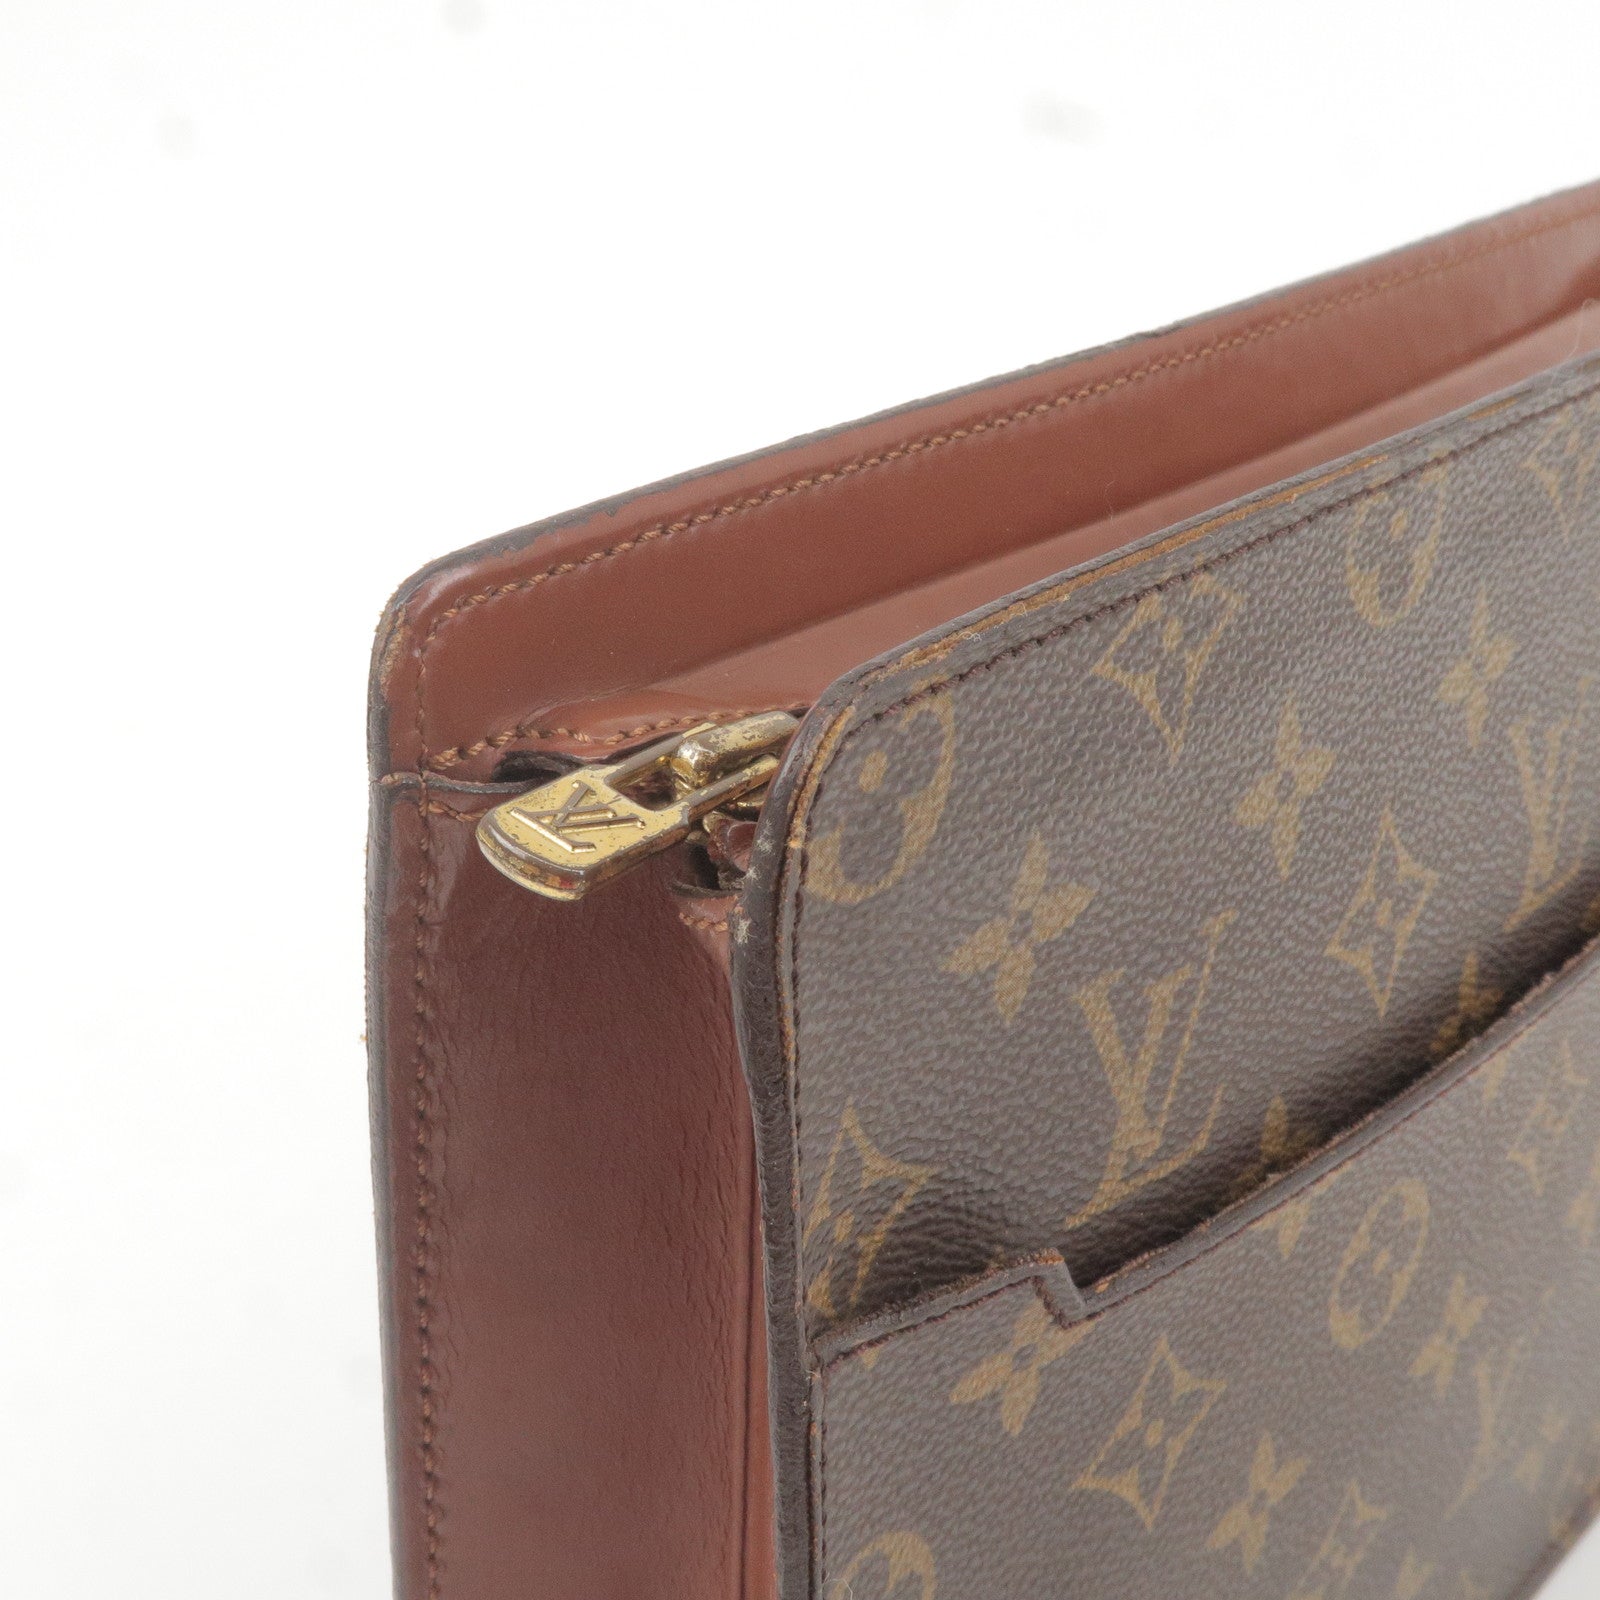 Vintage Louis Vuitton Monogram clutch bag, pochette purse. Must